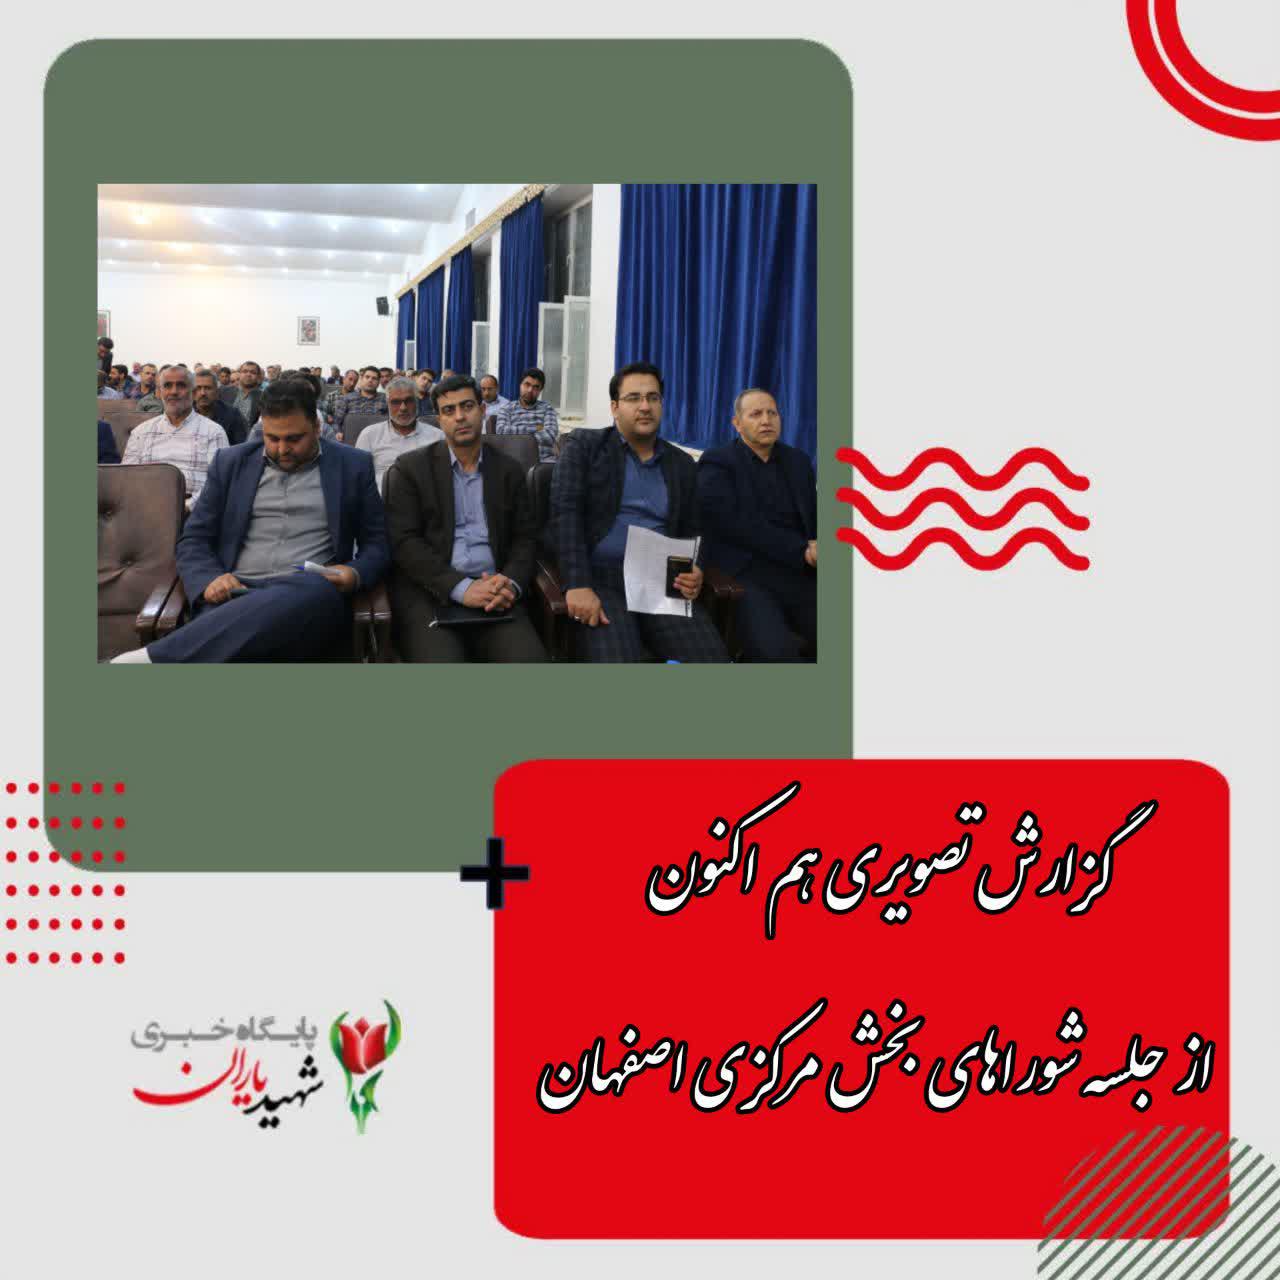 گزارش تصویری هم اکنون از جلسه شوراهای بخش مرکزی اصفهان